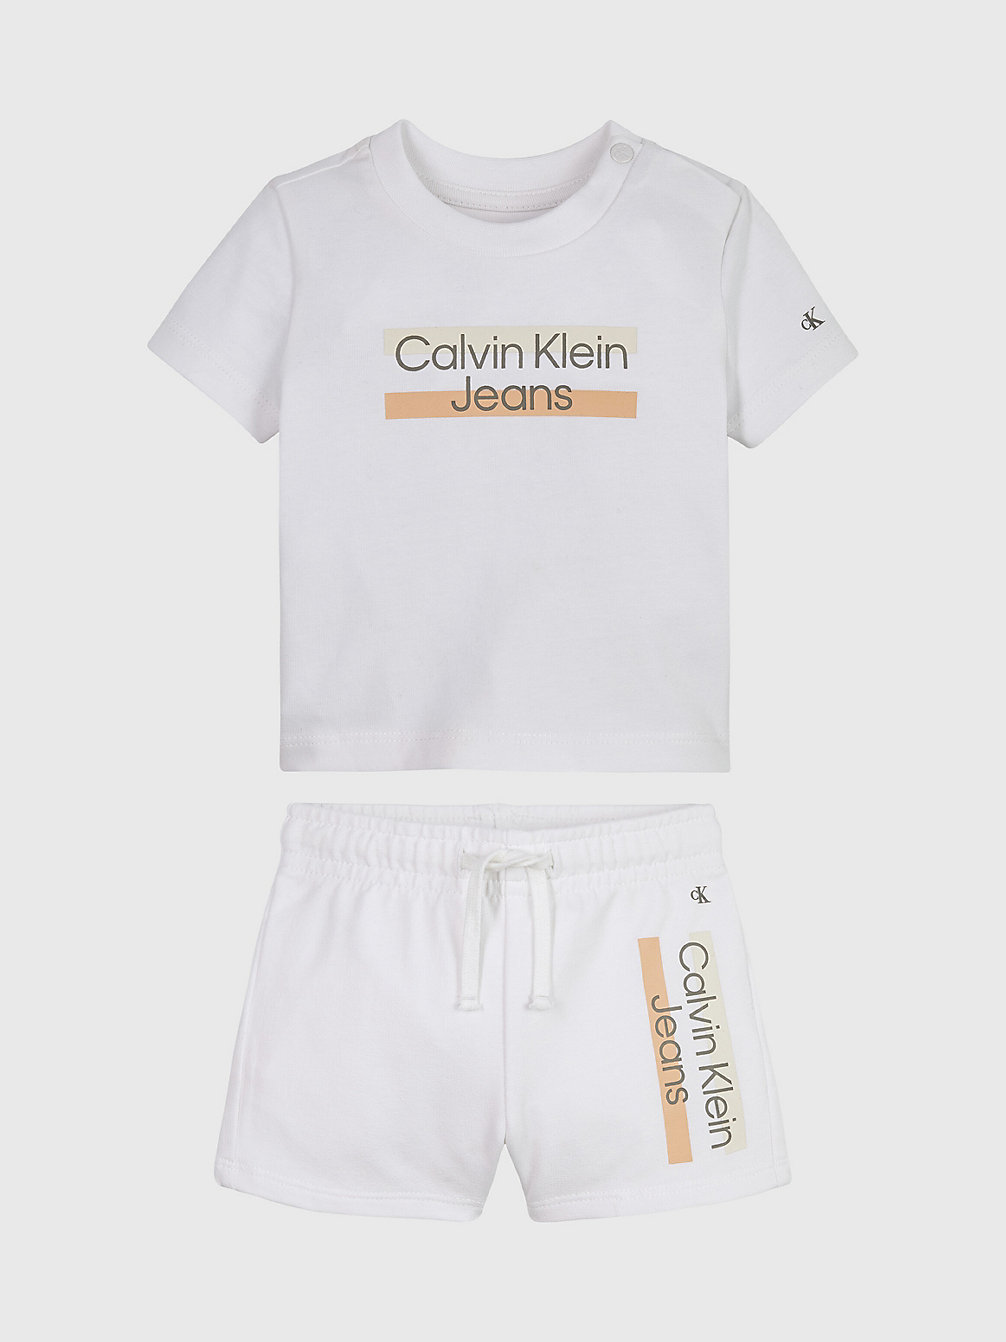 BRIGHT WHITE Ensemble T-Shirt Et Short Pour Nouveau-Né undefined newborn Calvin Klein